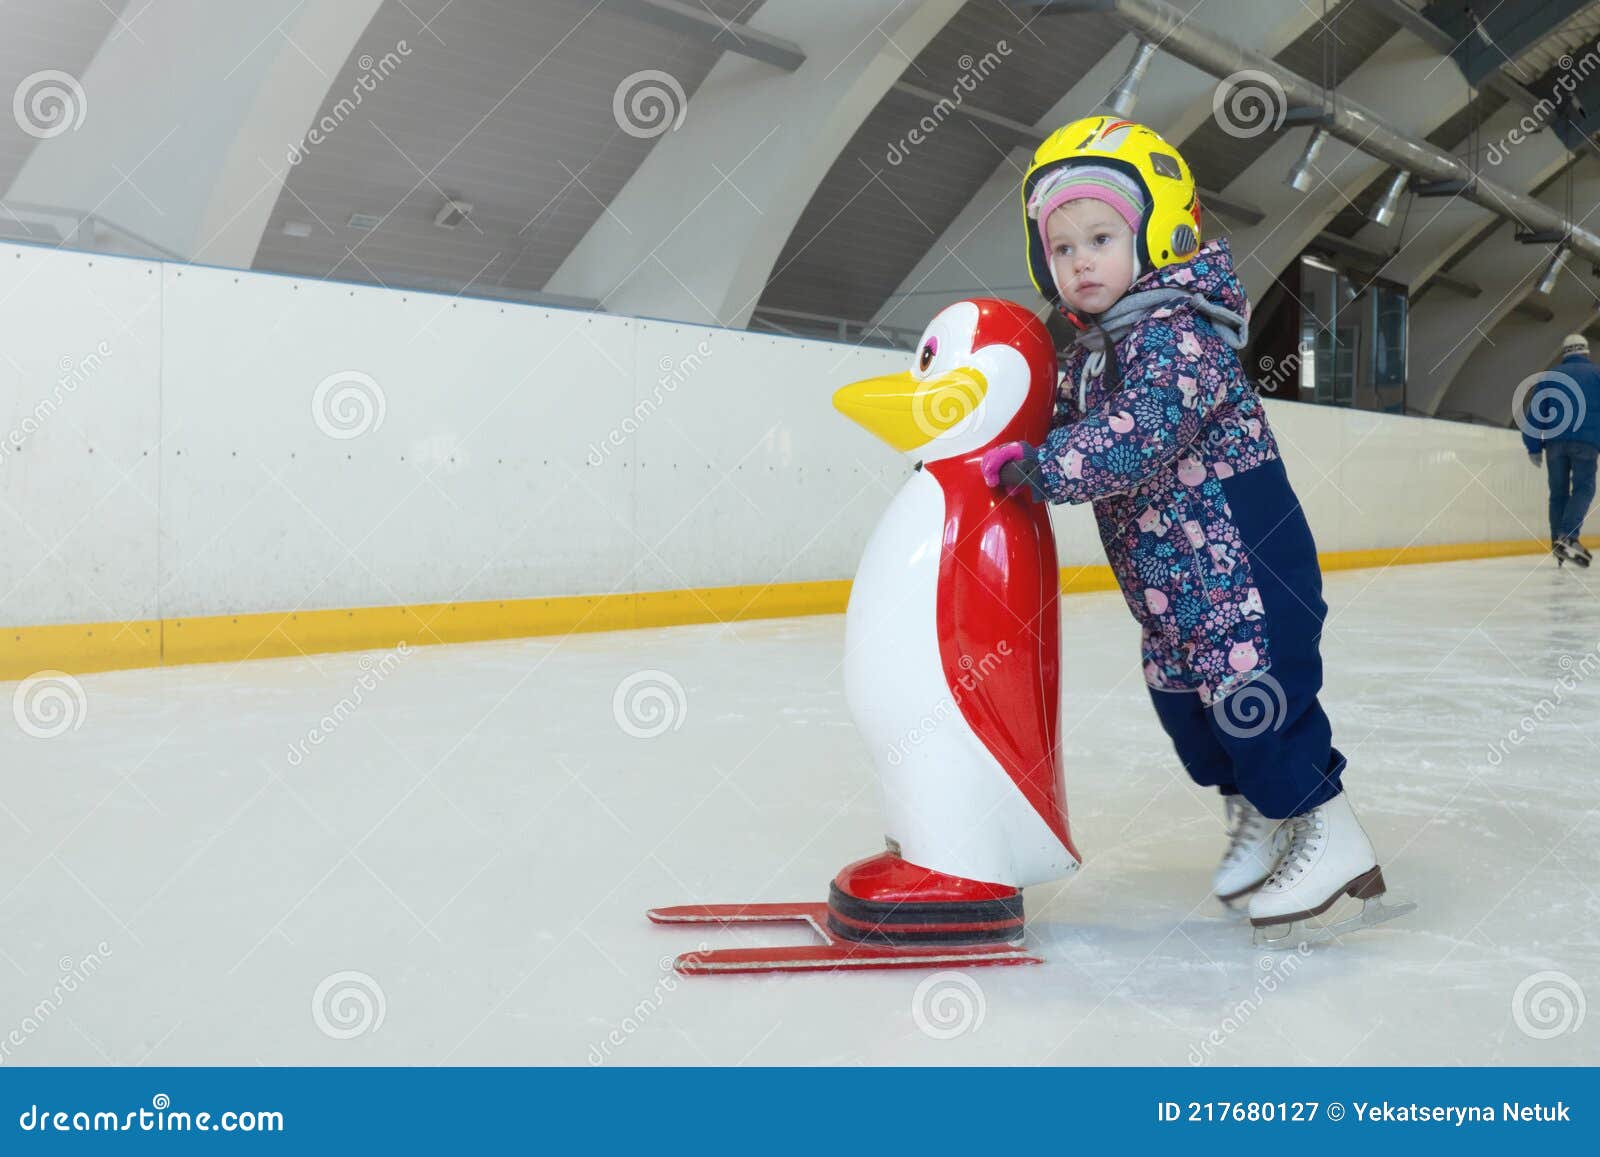 Esta niña de 3 años pisa el hielo y conquista al público con su número de patinaje  artístico